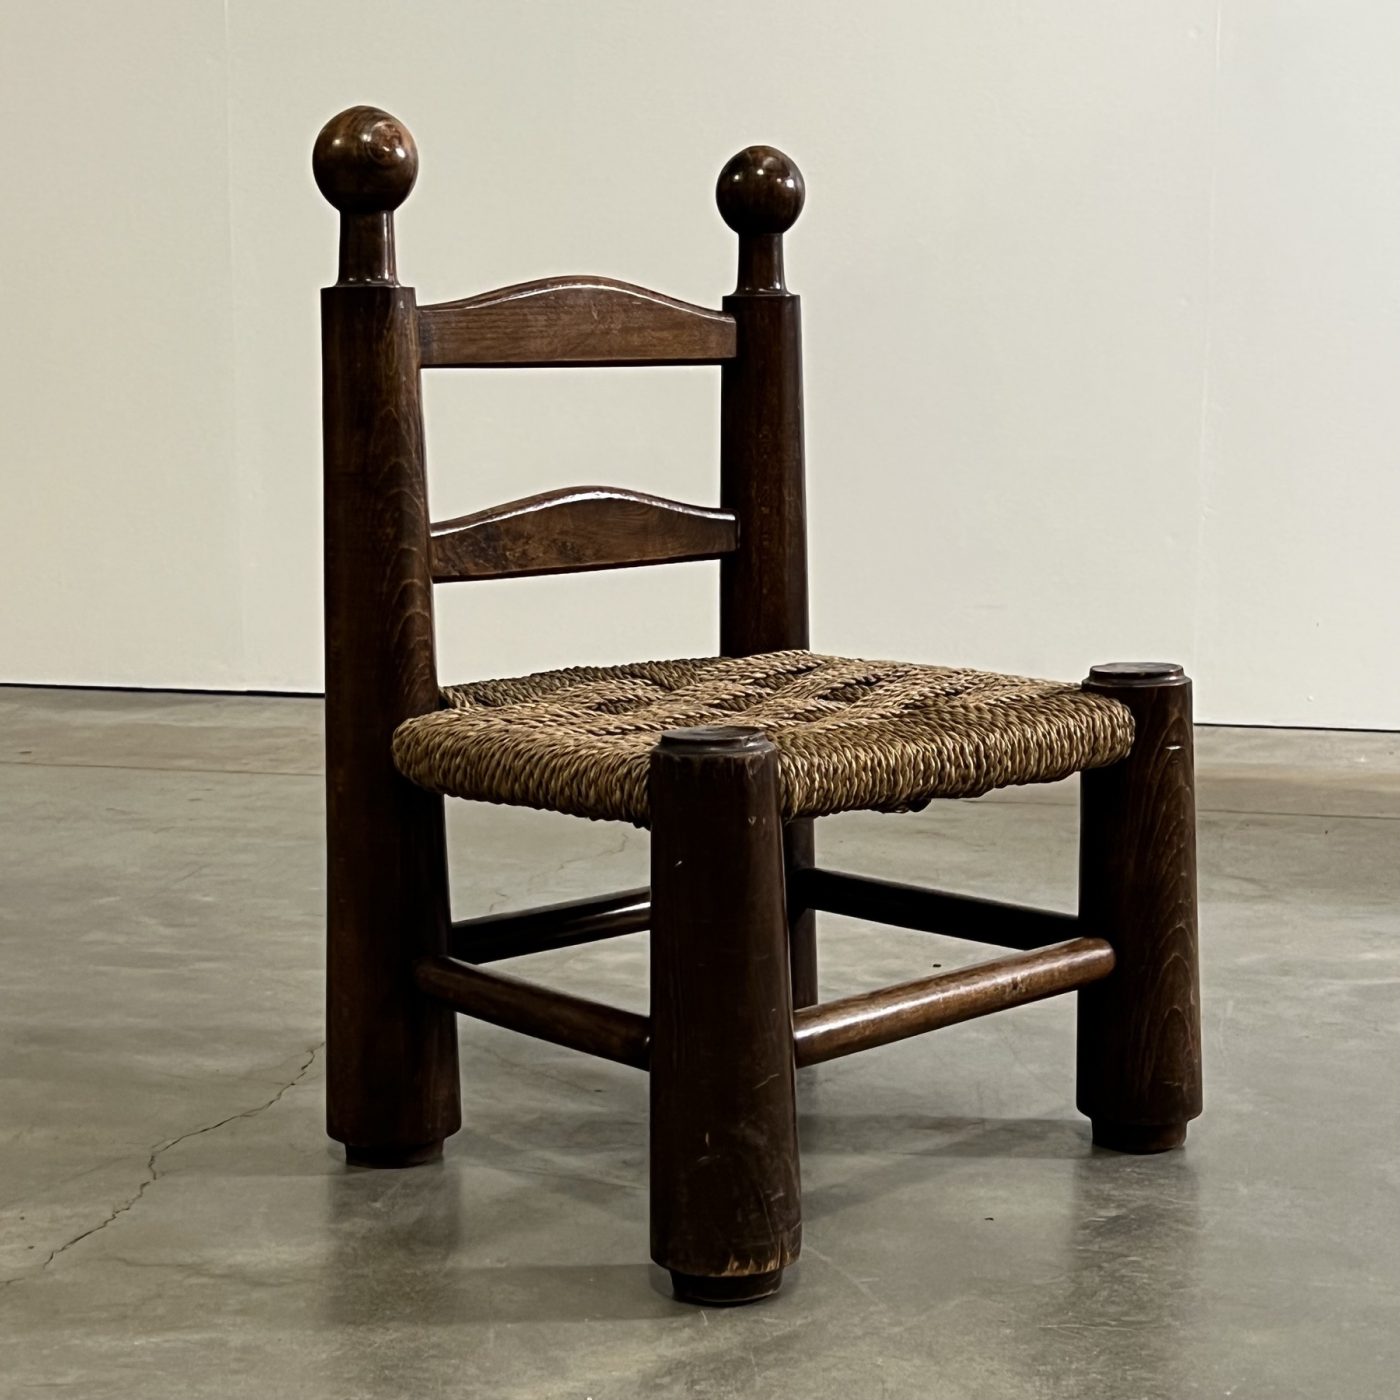 objet-vagabond-dudouyt-chairs0004